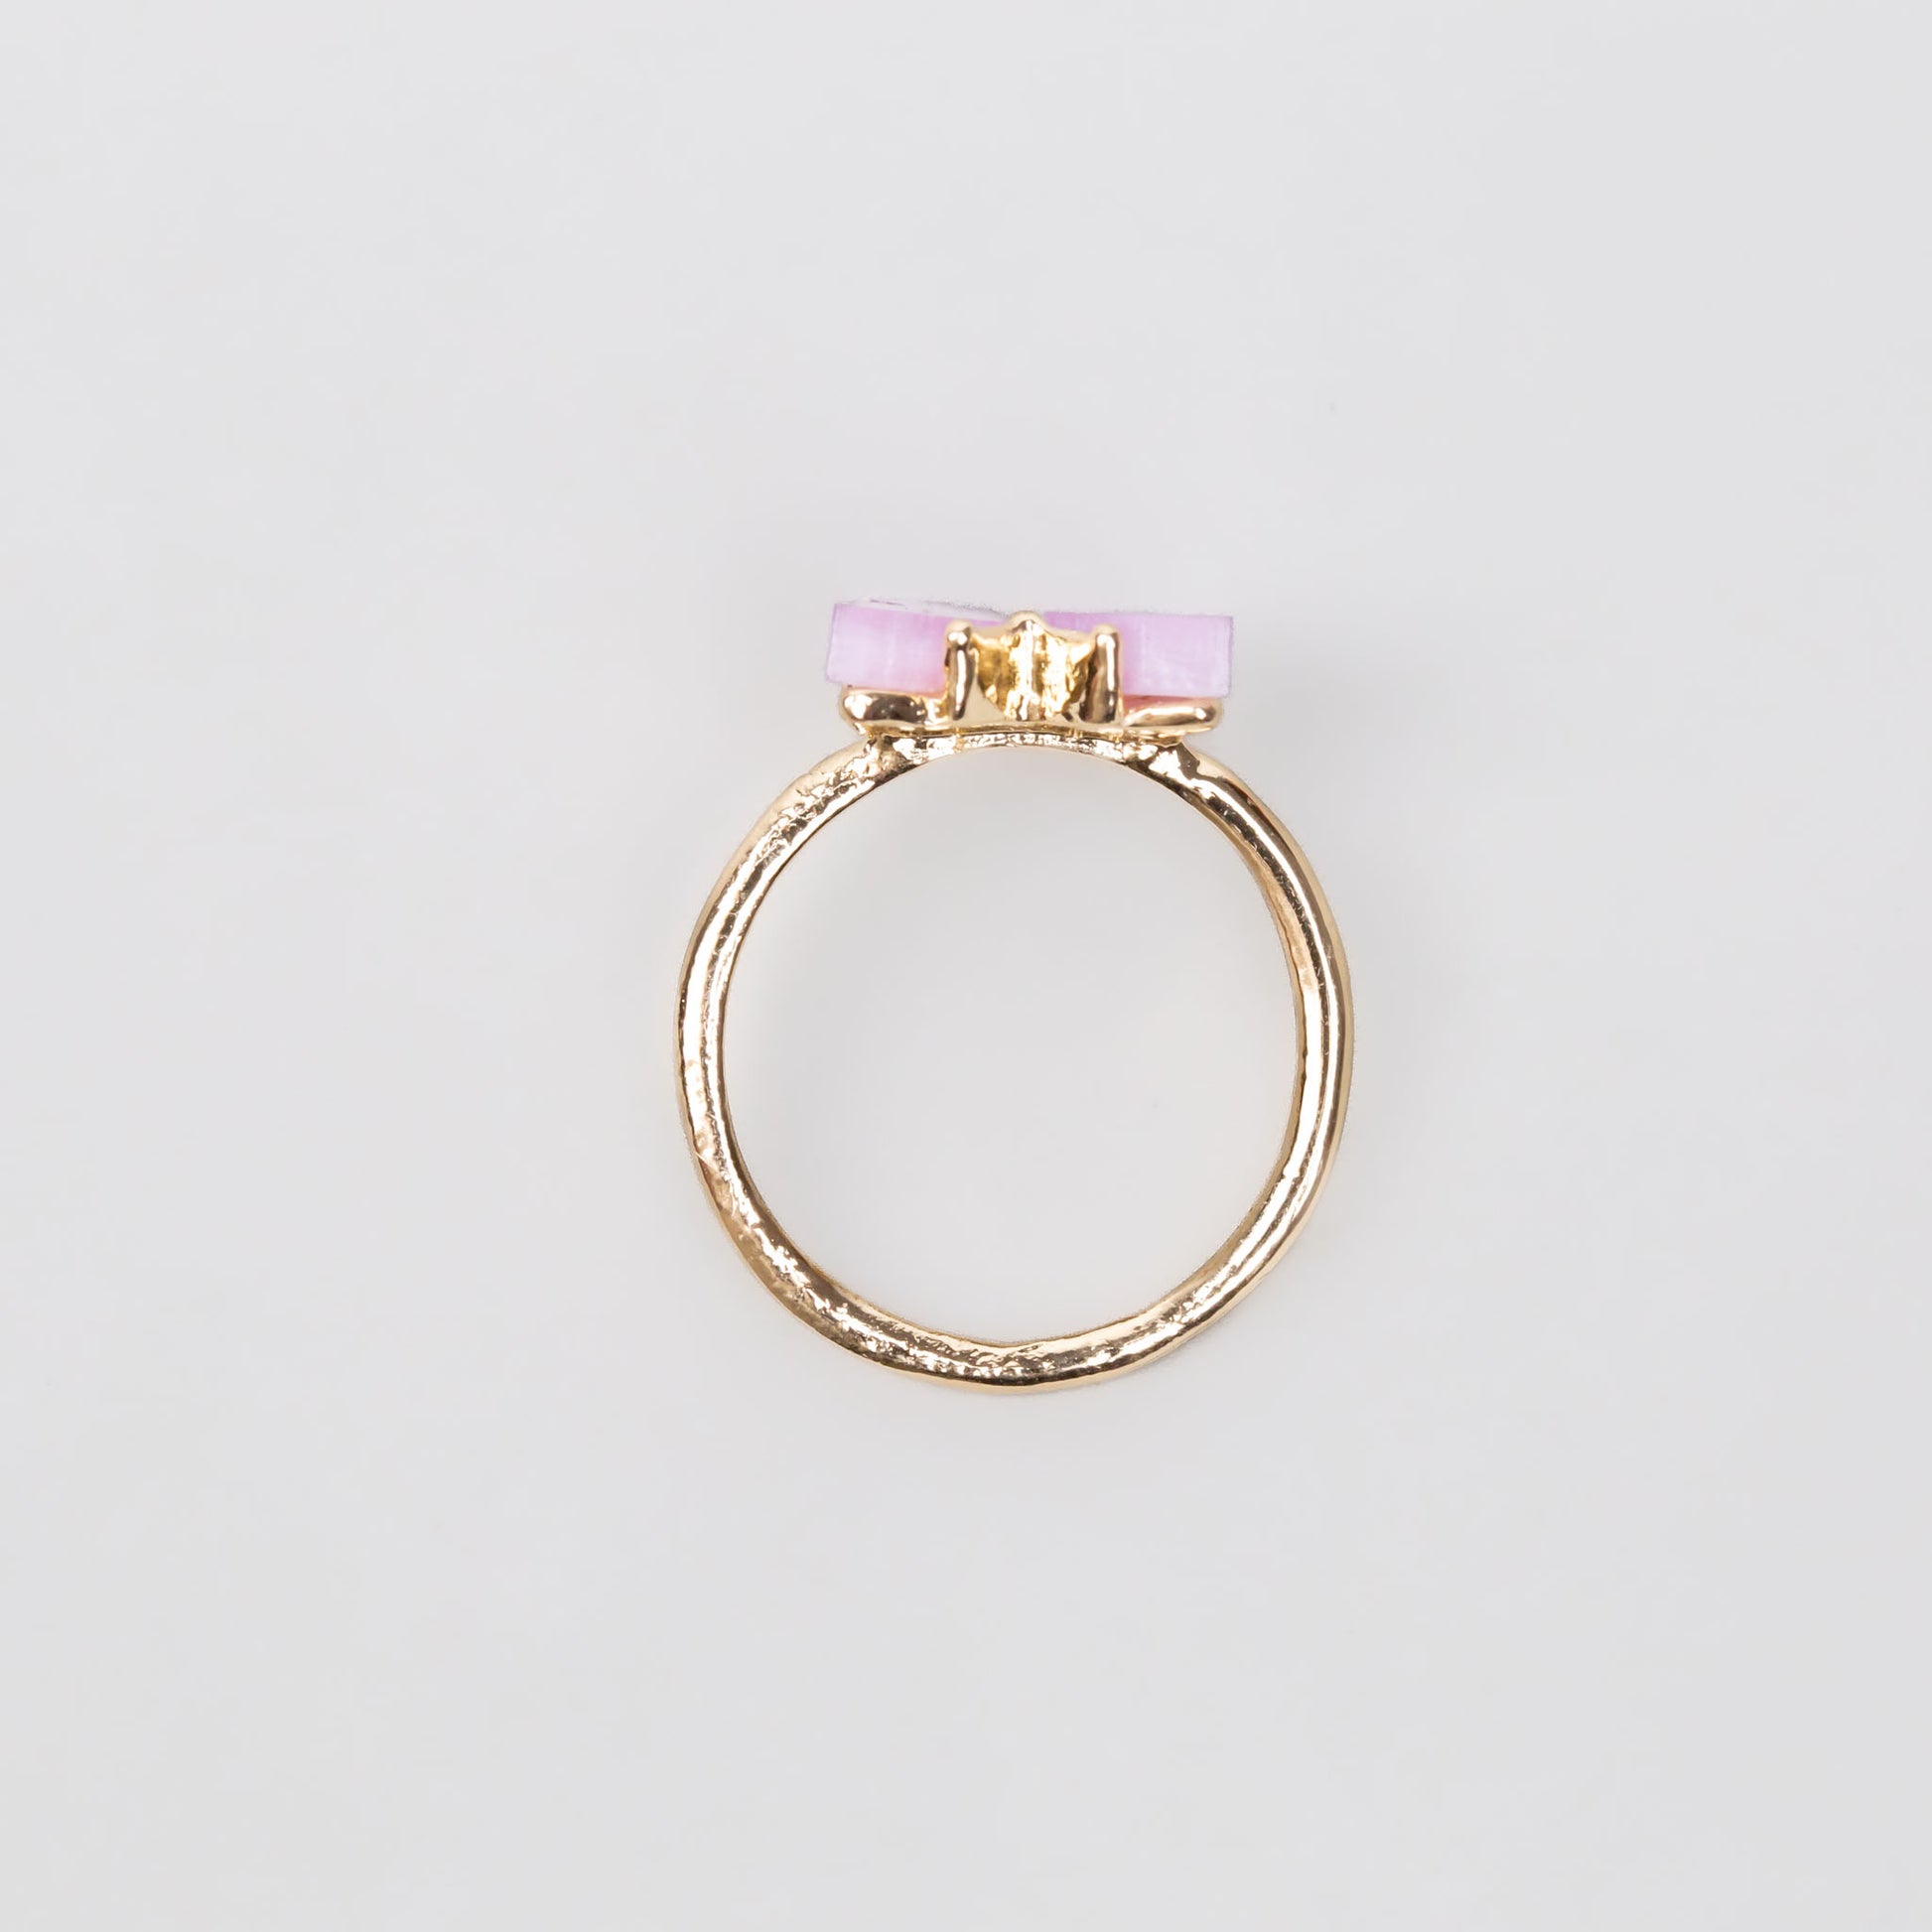 Inel auriu cu pietre sidefate în formă de fluture - Roz